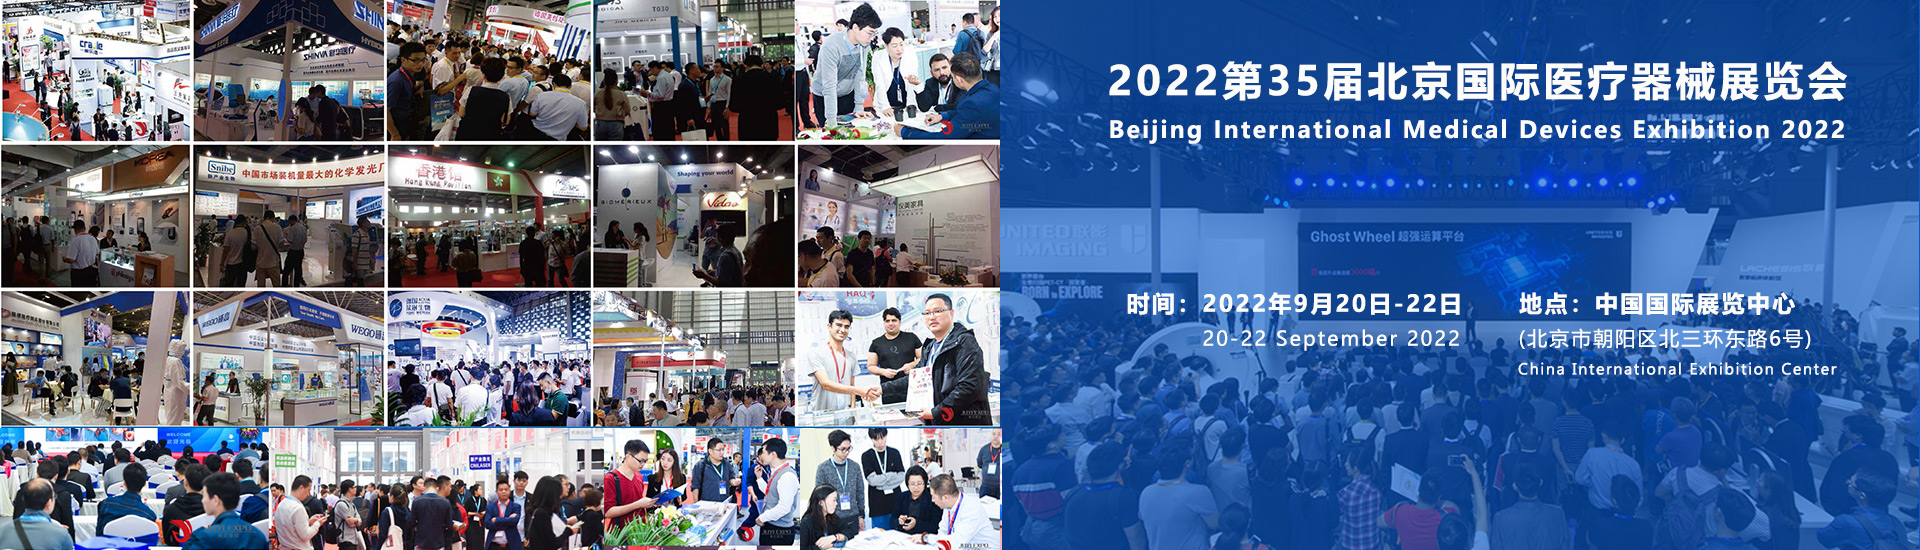 2022北京国际医疗器械展览会